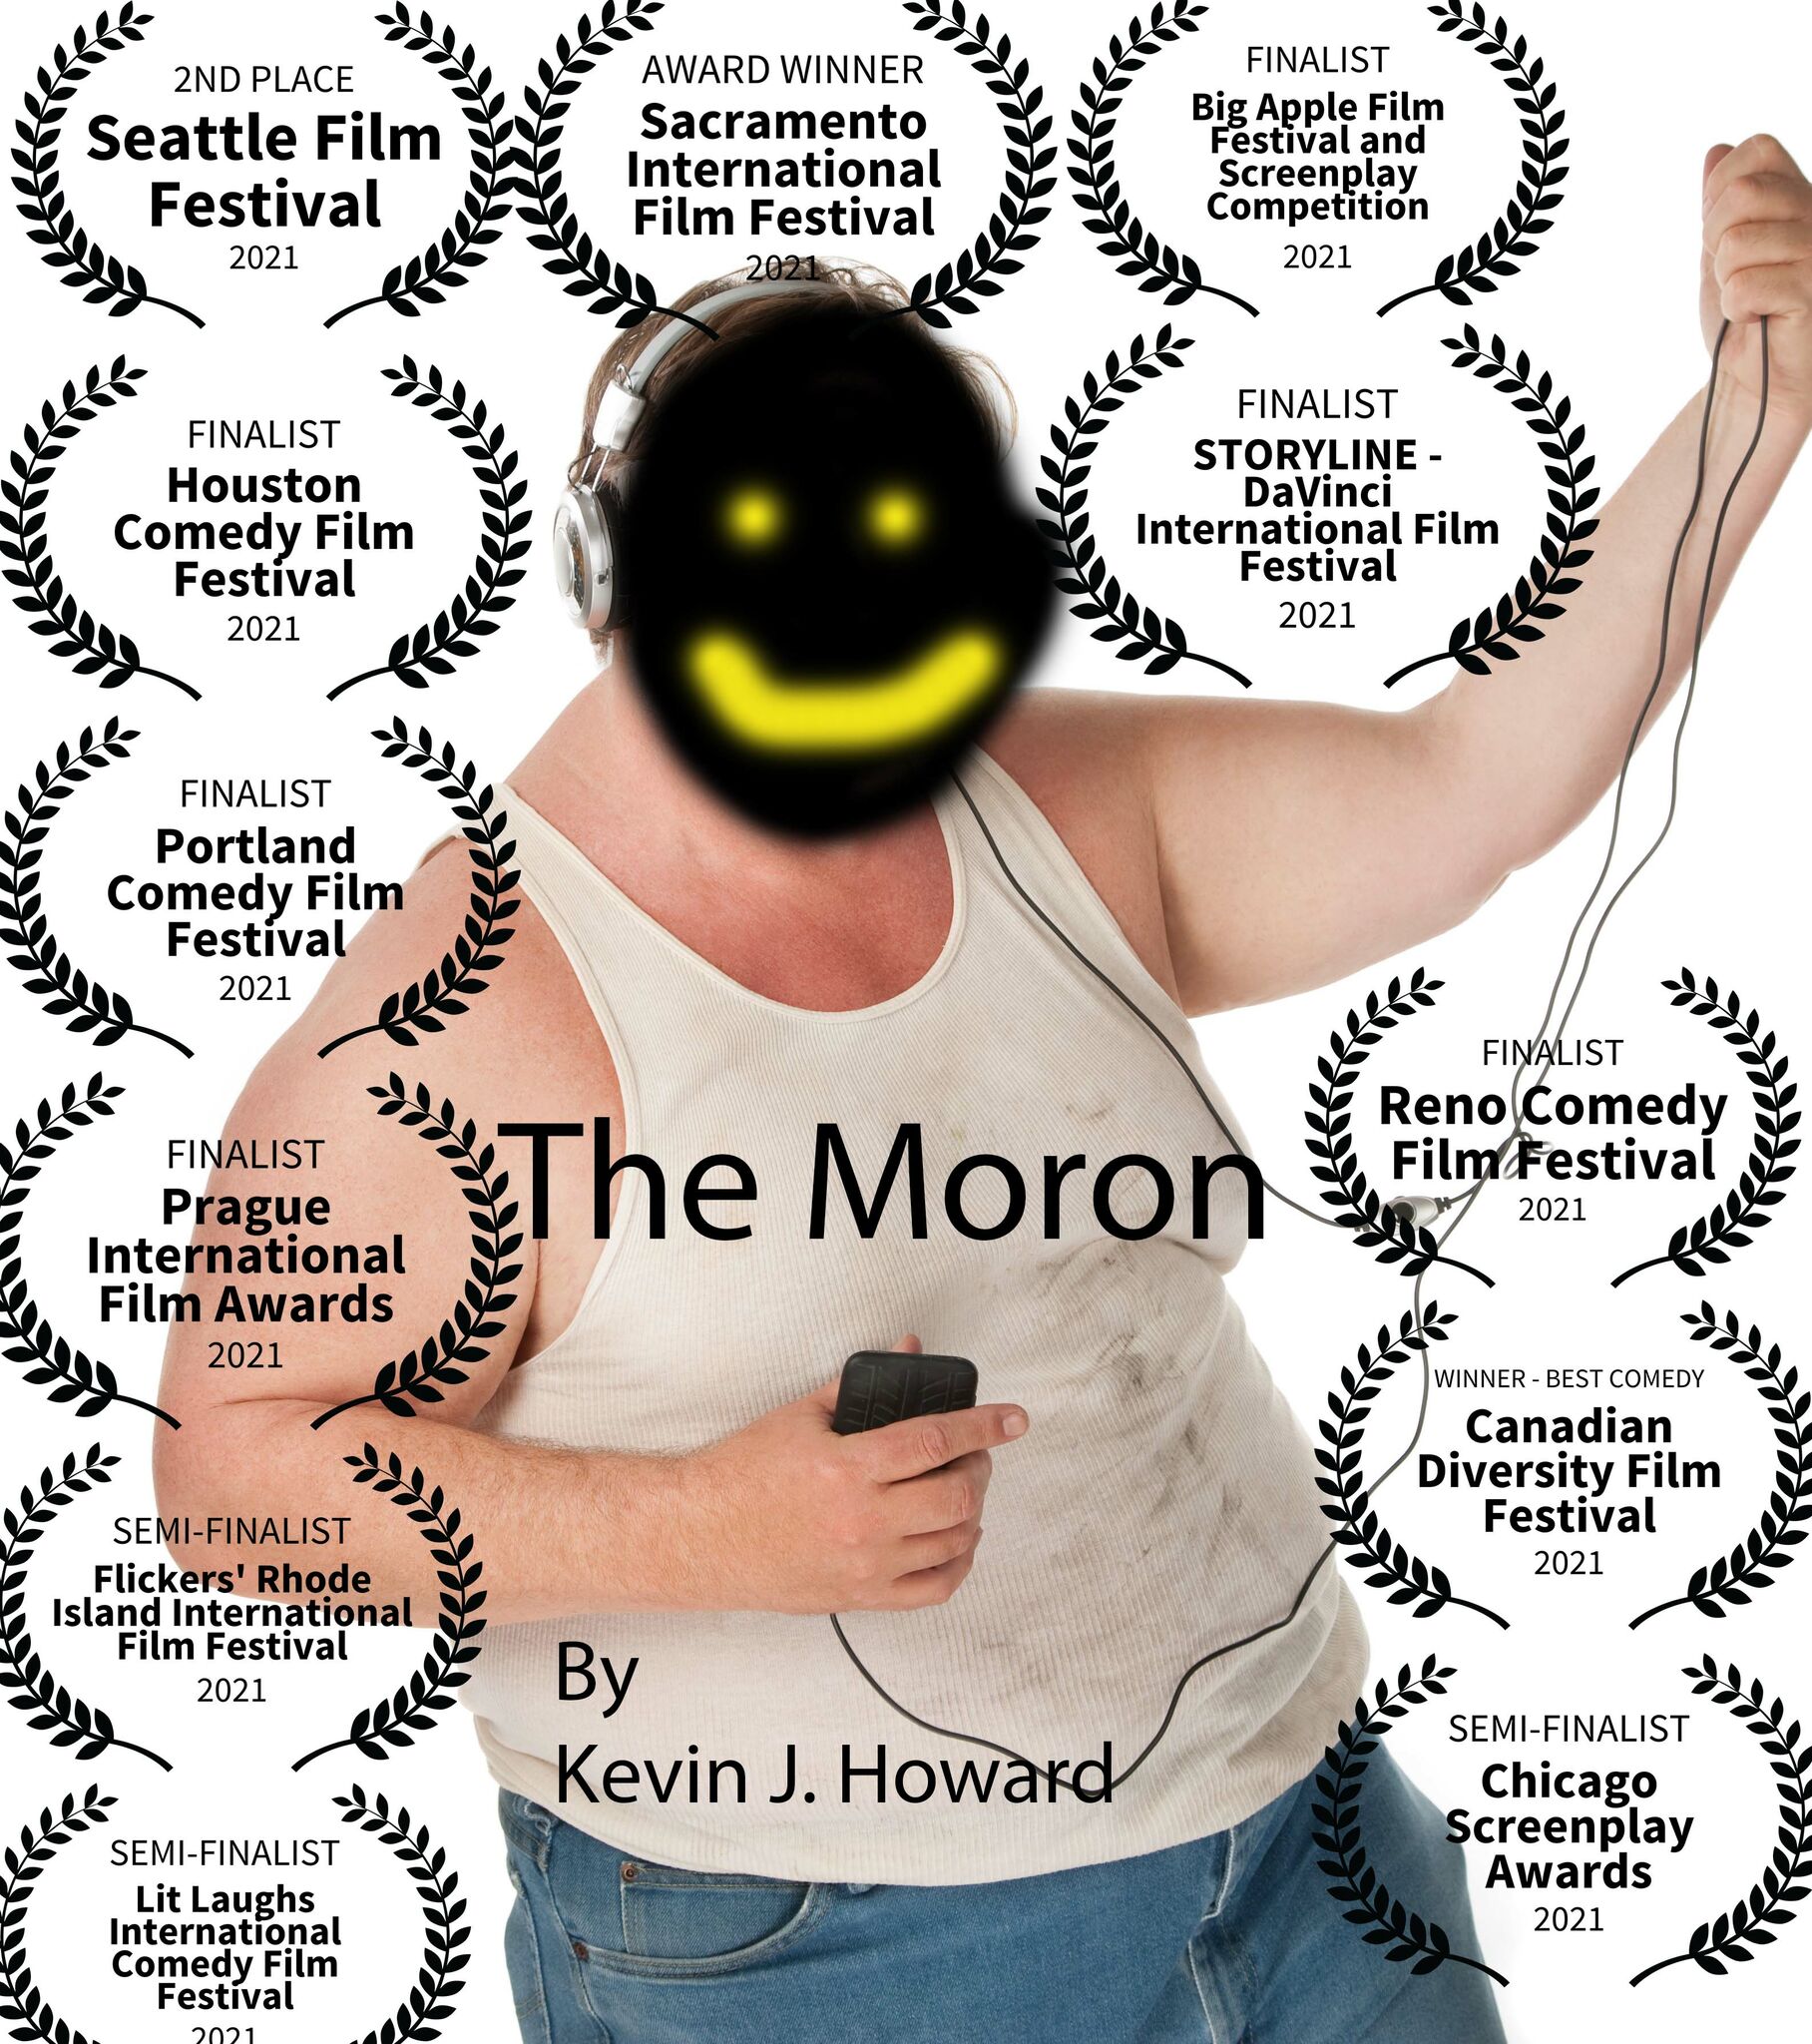 THE MORON